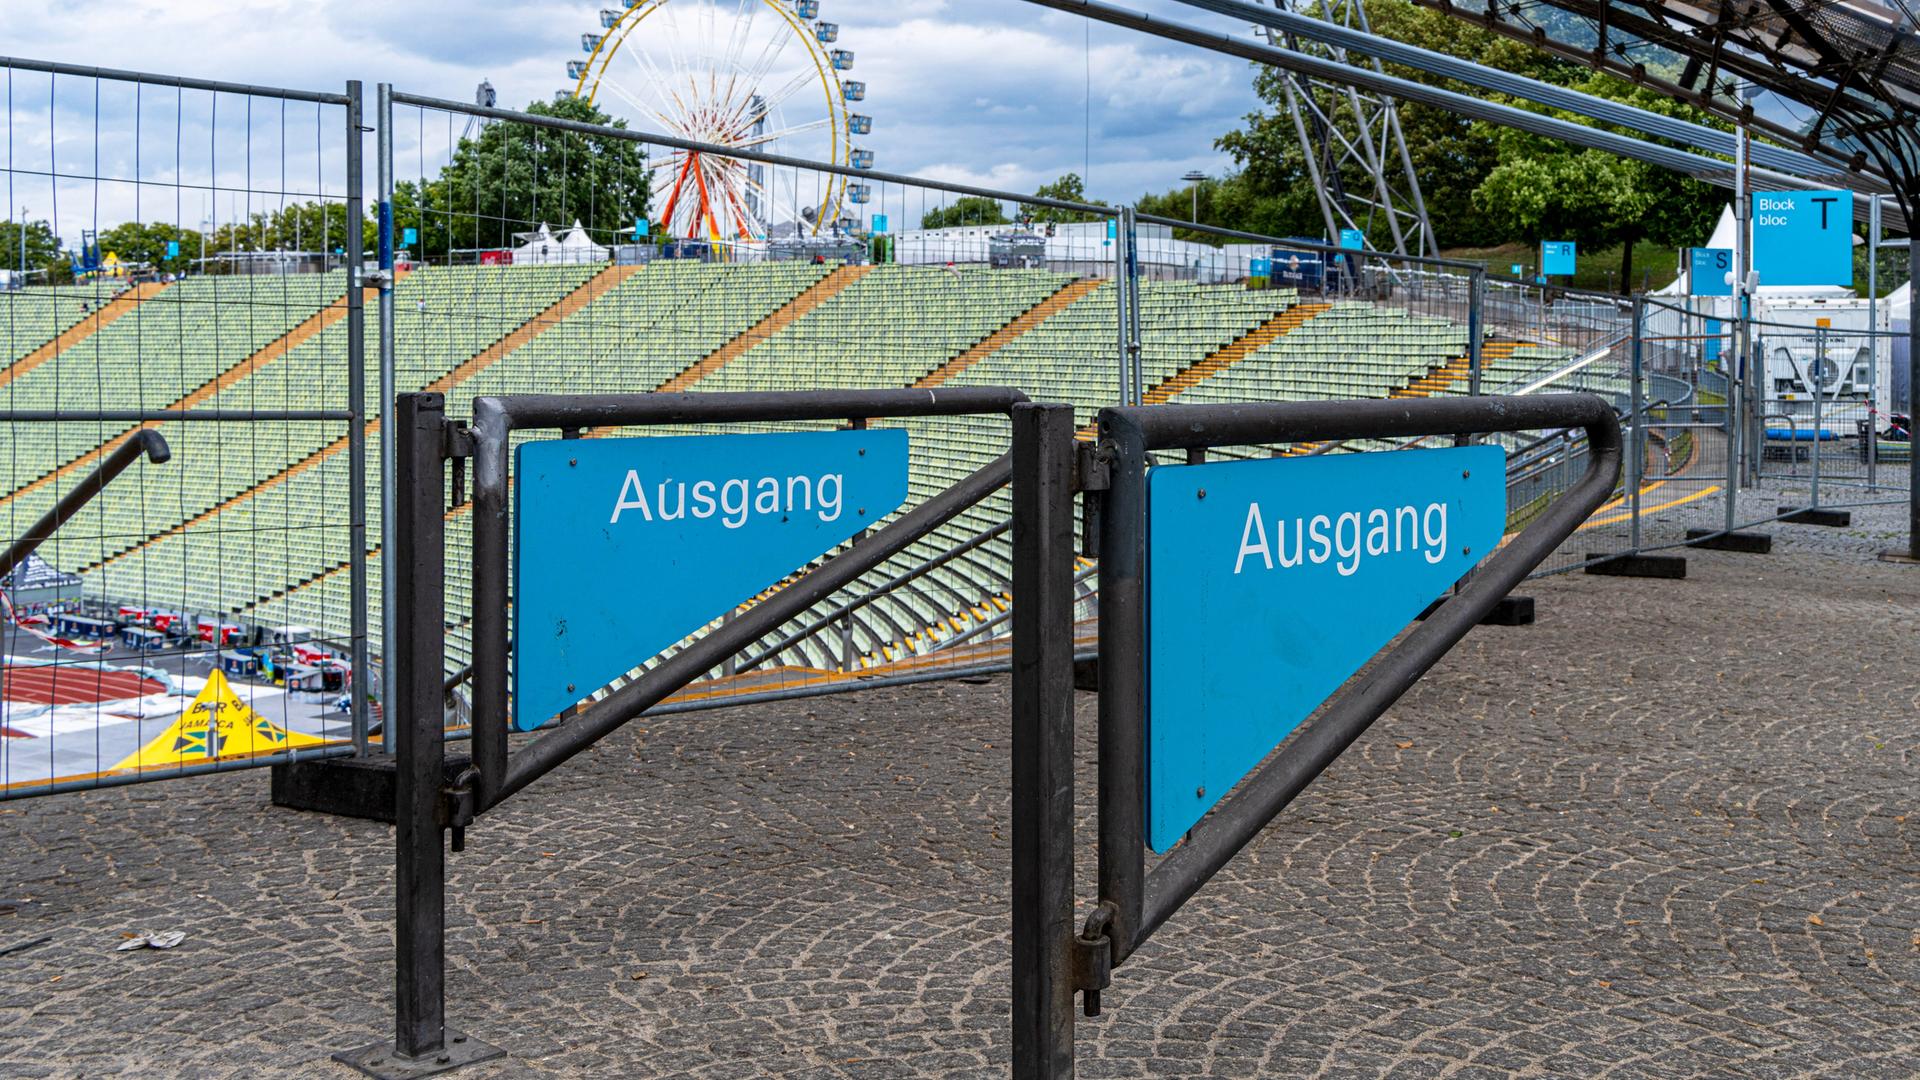 Eingang und Ausgang zum Olympiapark in München